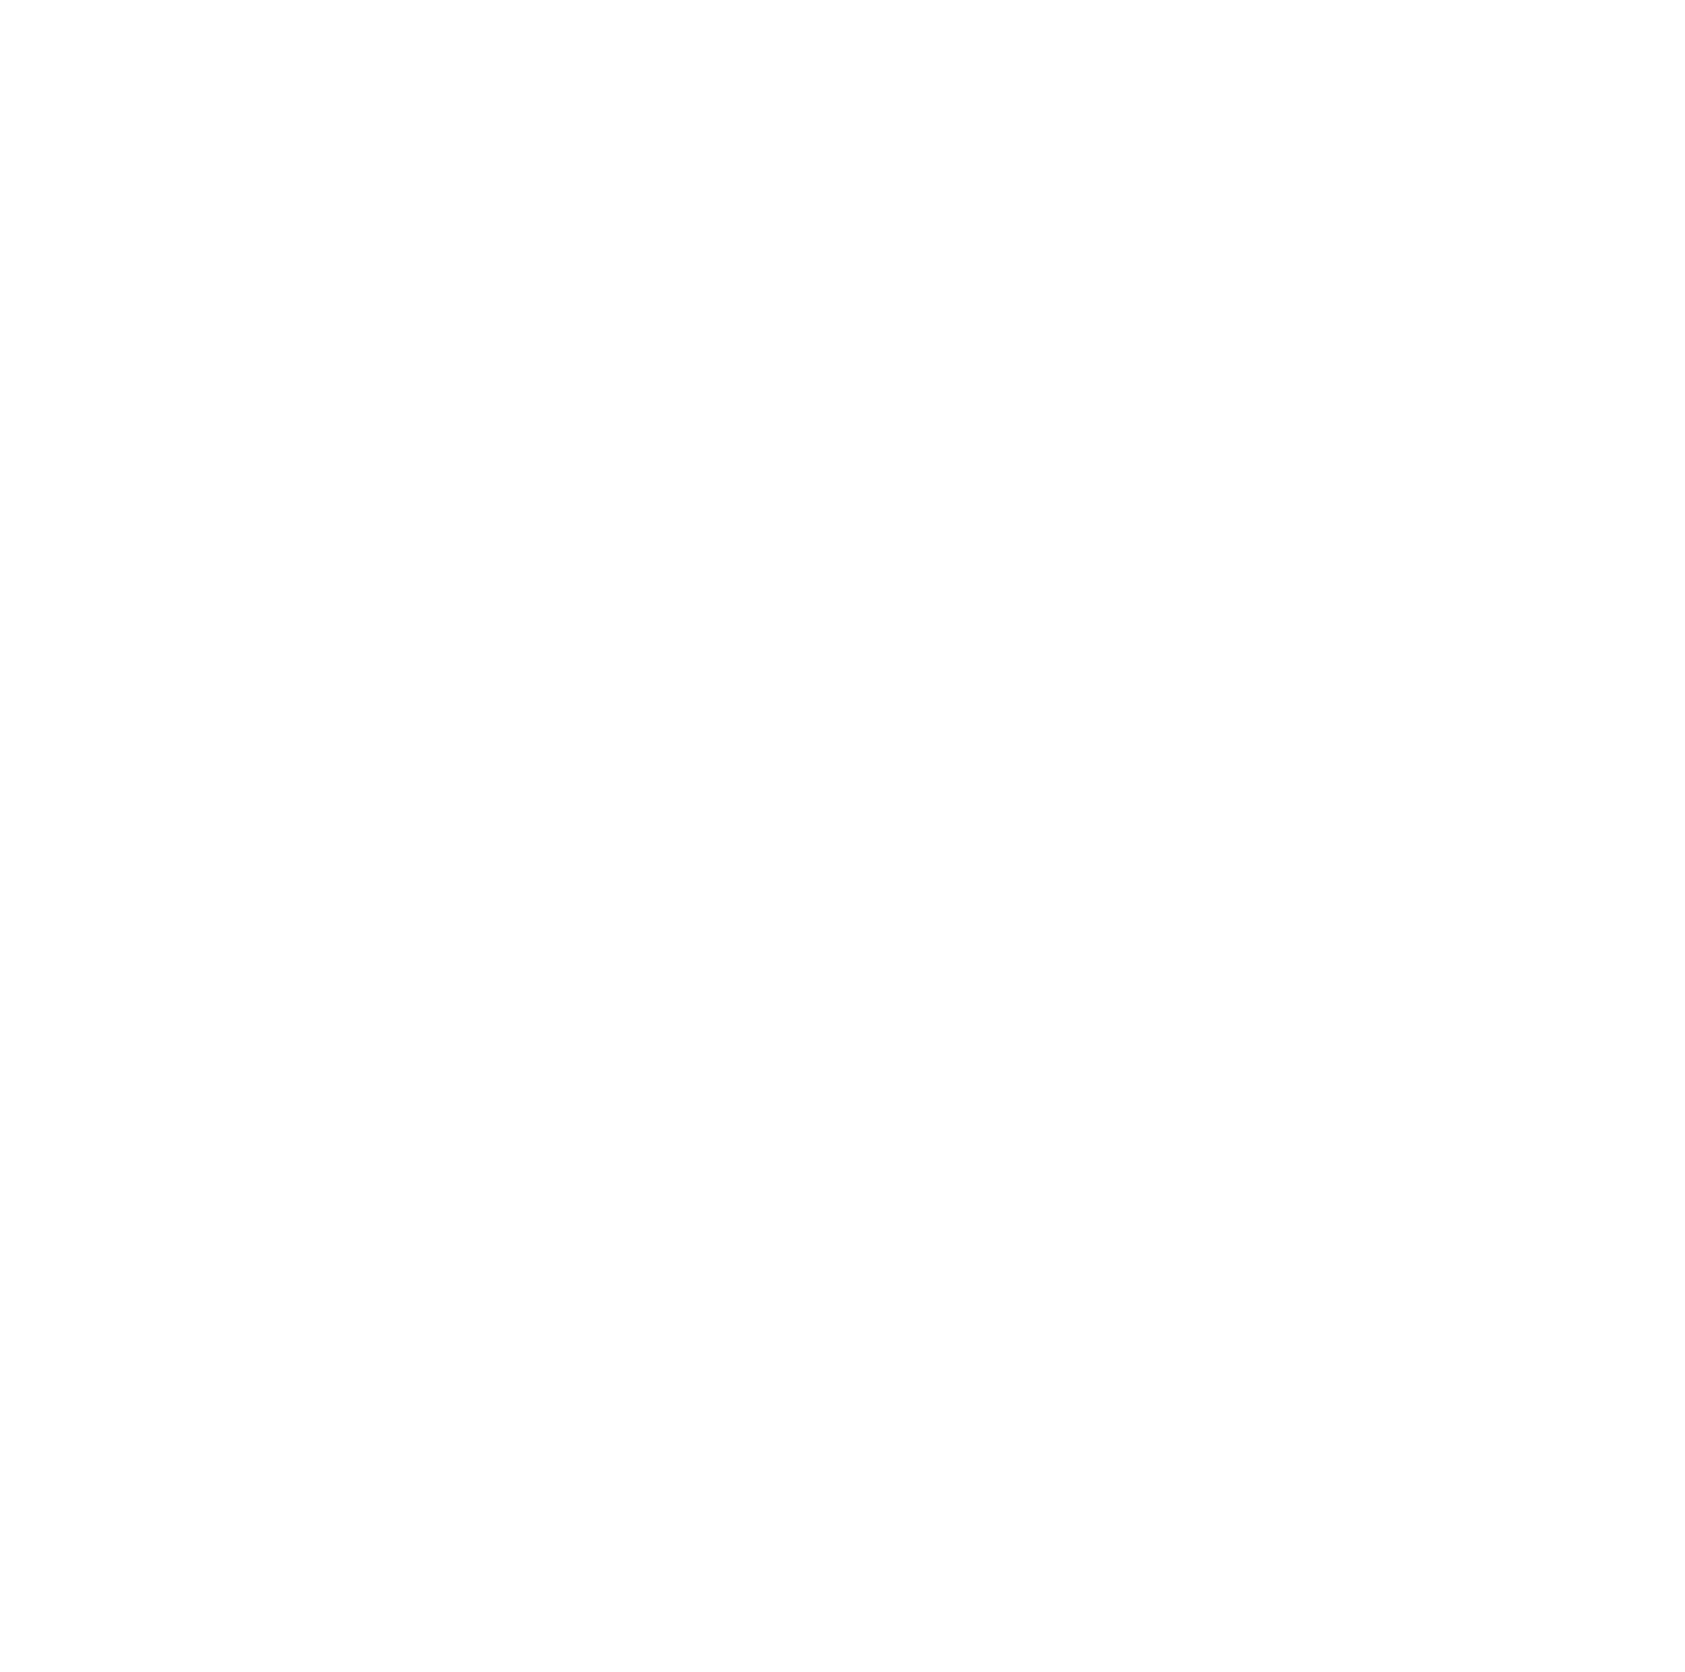 Bullard Children's Dentistry logo